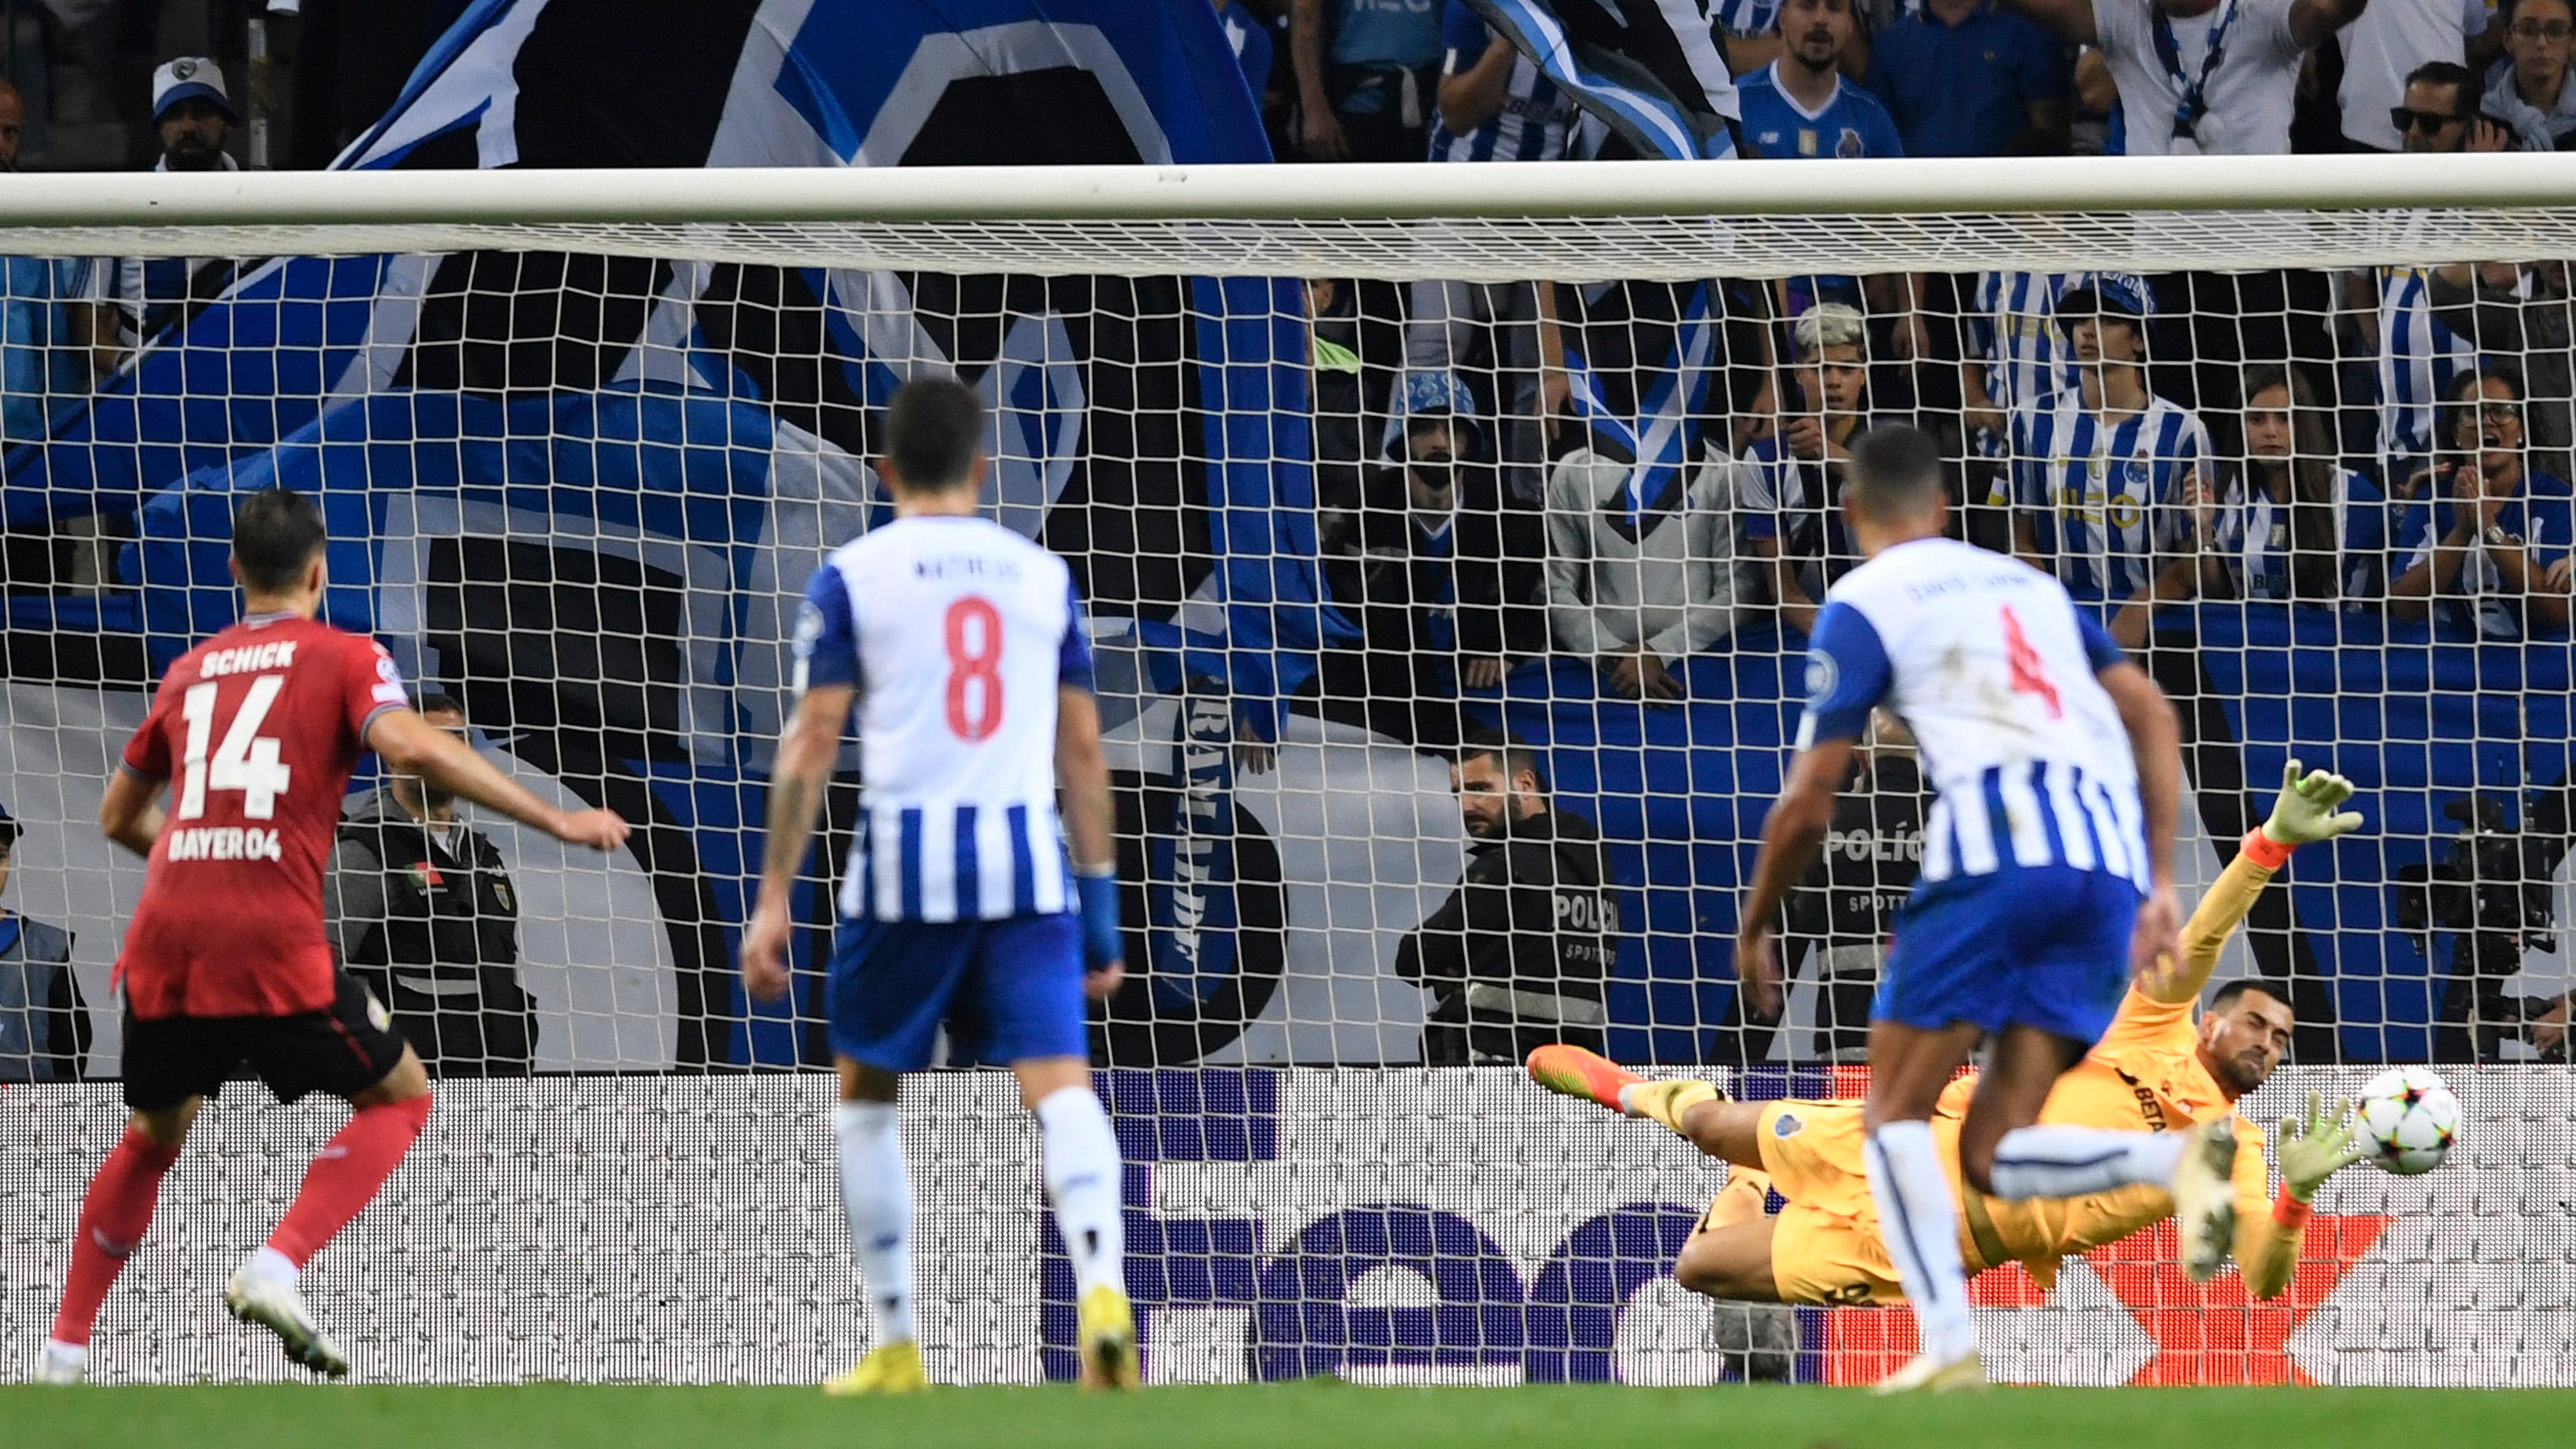 WATCH: VAR chaos before Schick's penalty shocker for Leverkusen in Porto | Goal.com